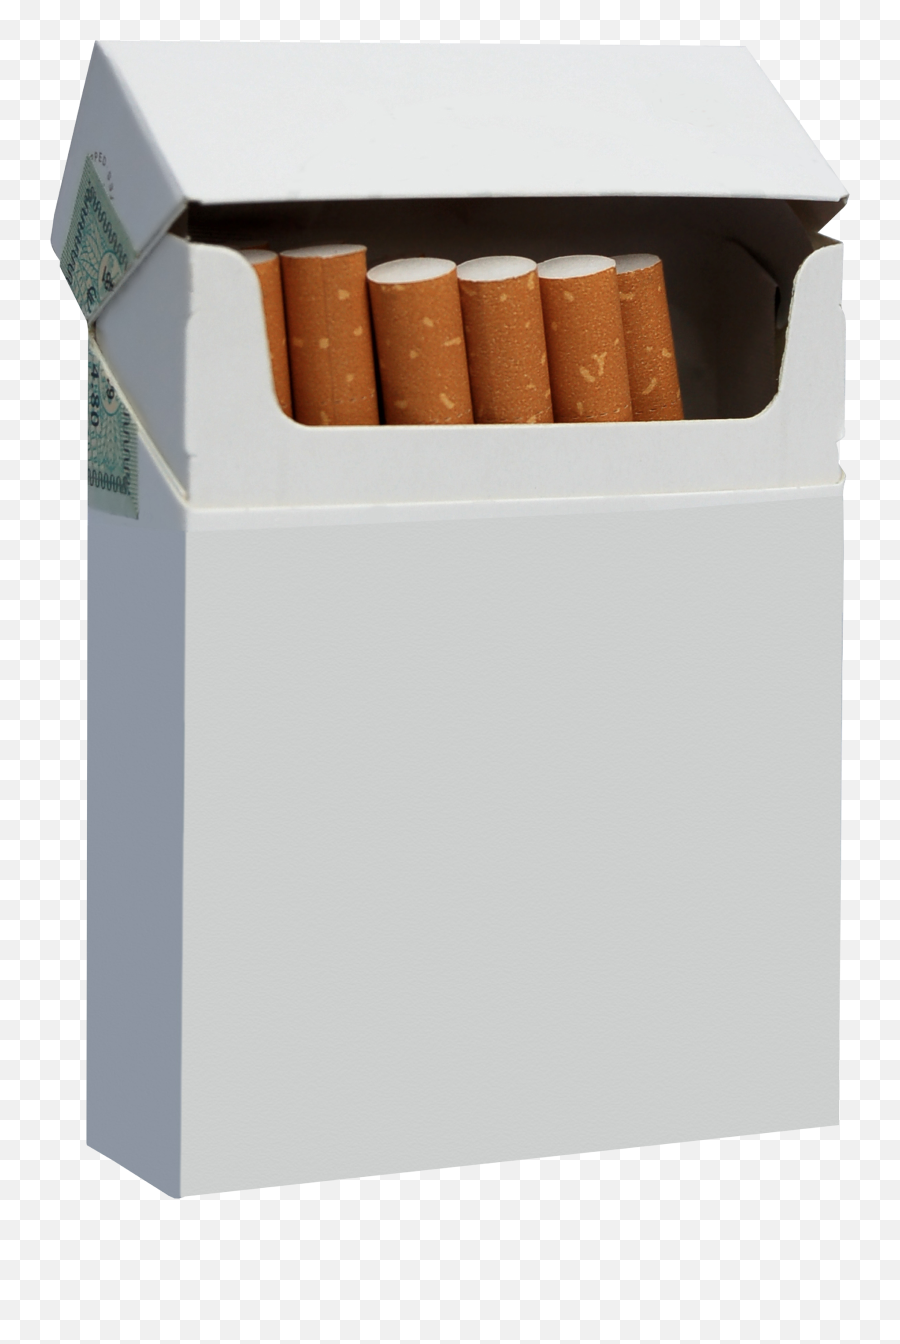 Cigarette Packet Png Transparent Images U2013 Free Png Images Emoji,Cigarette Clipart